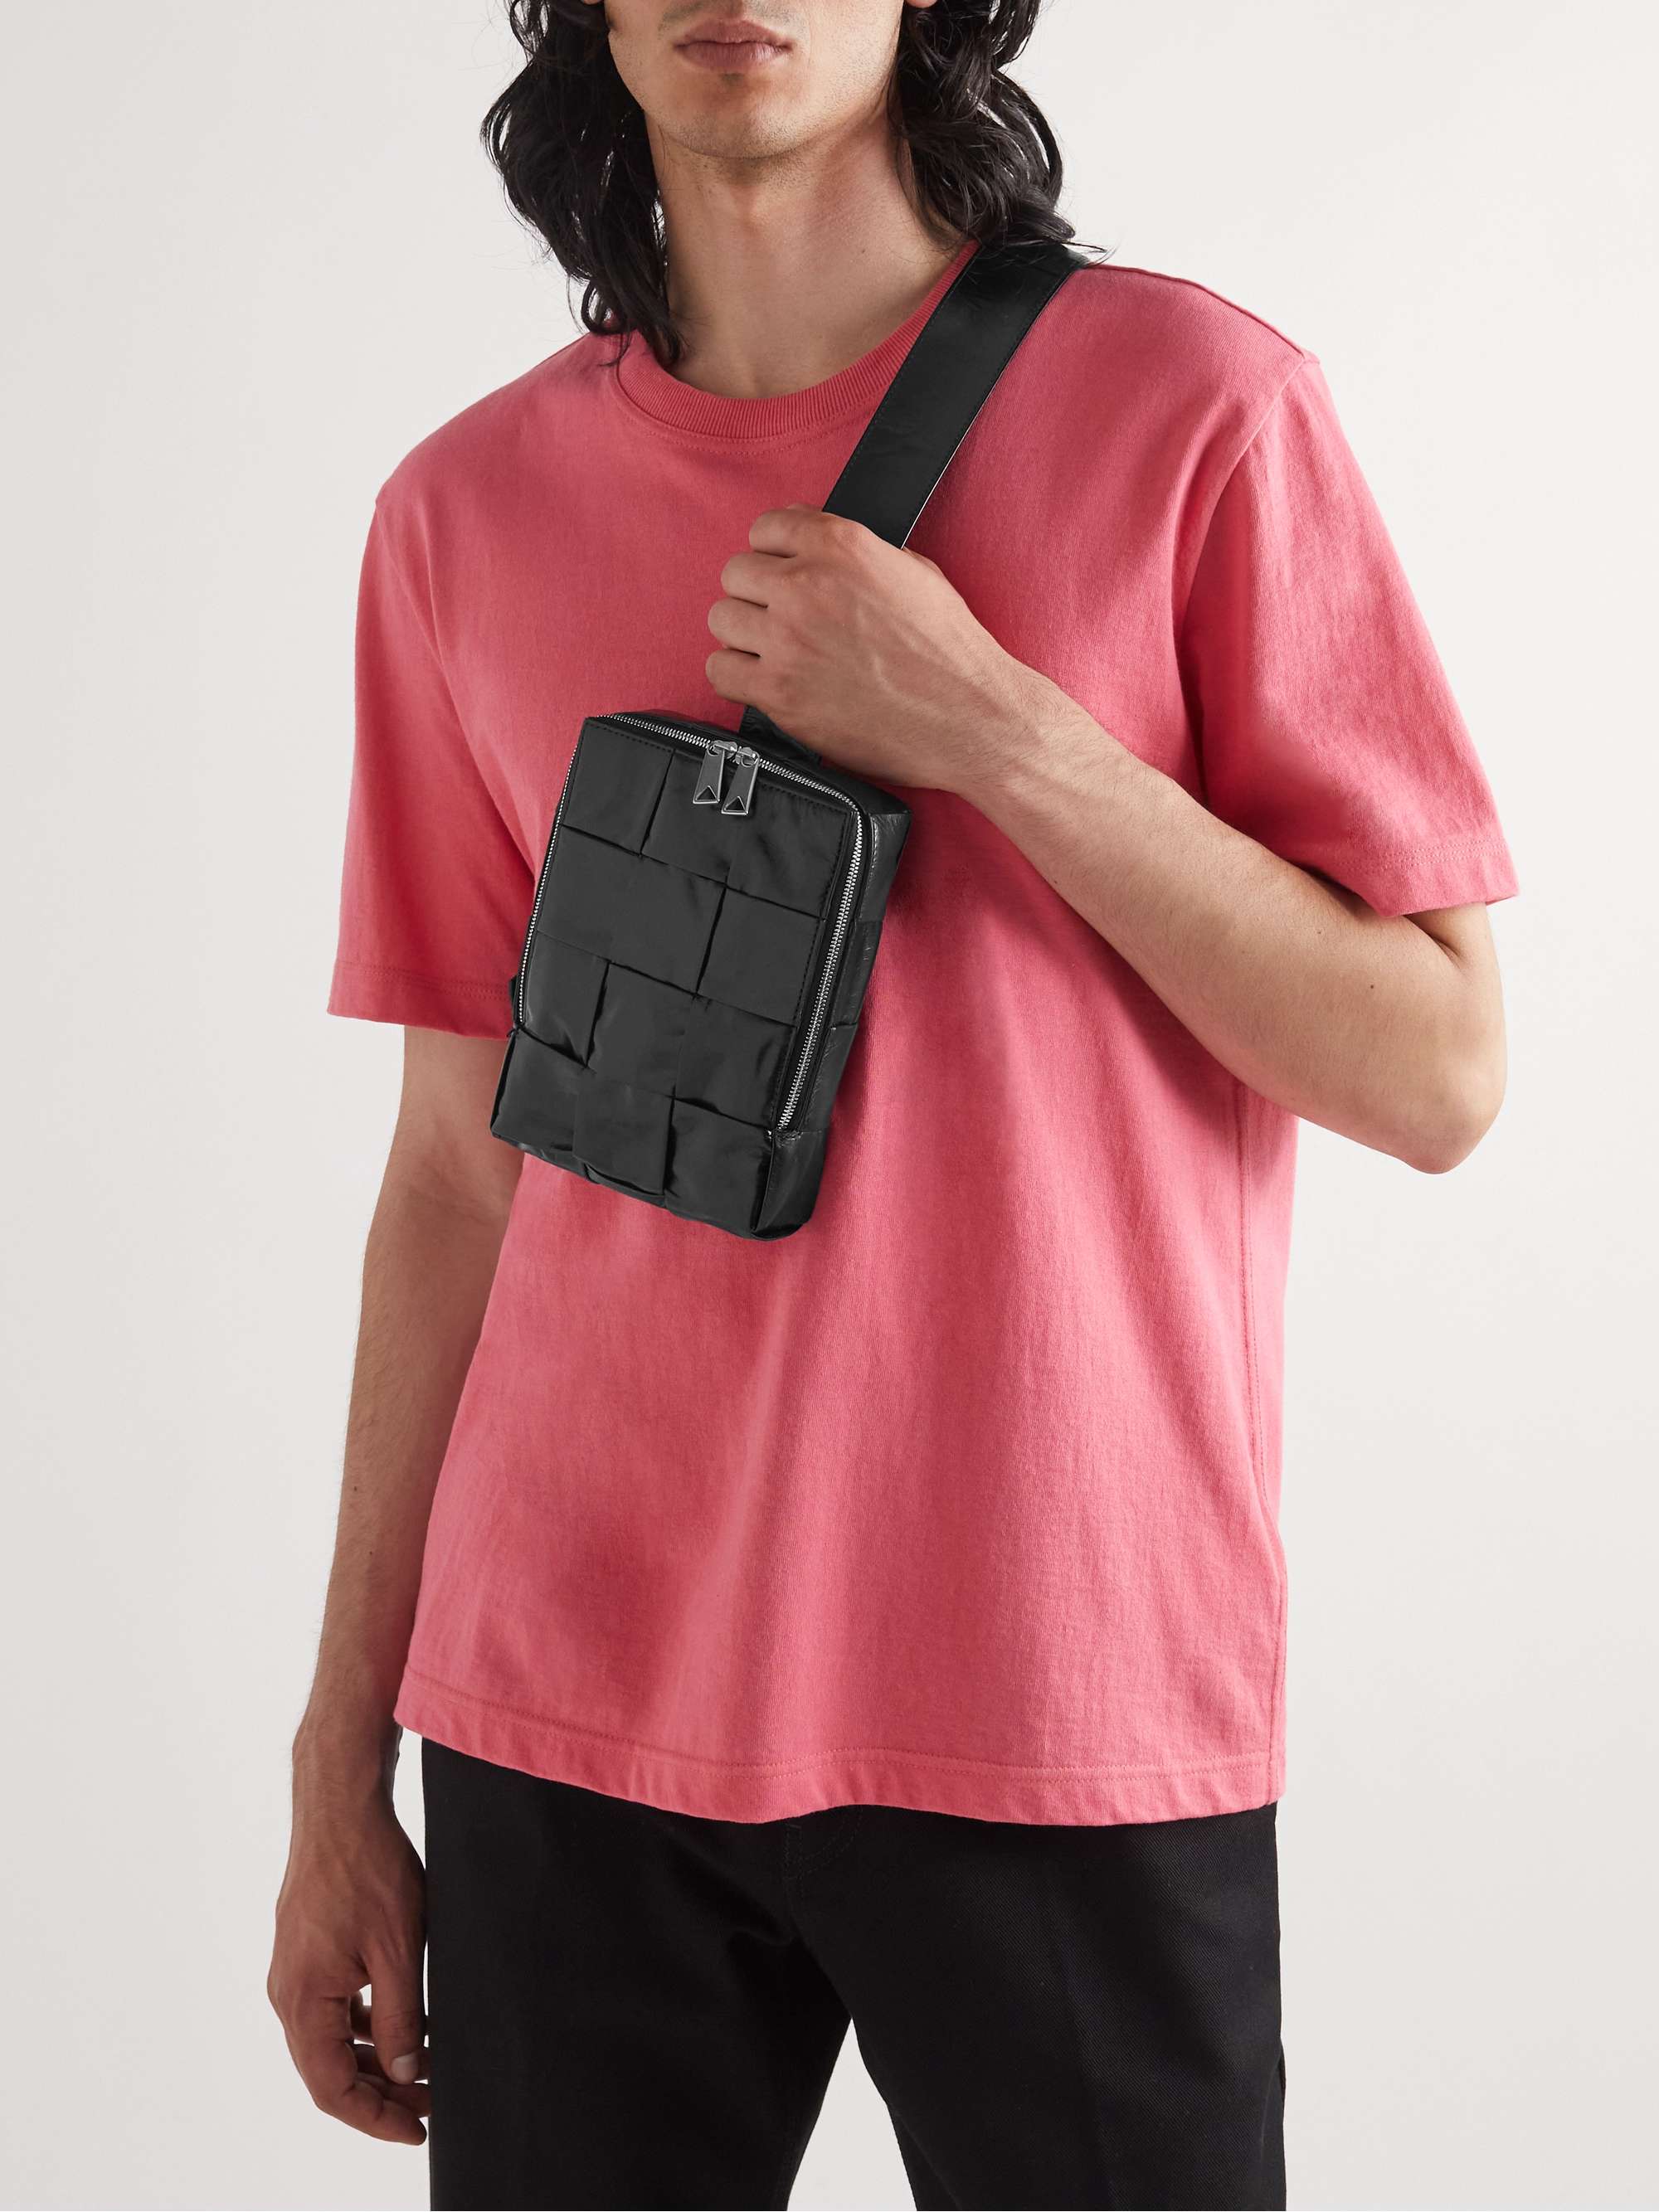 BOTTEGA VENETA Cassette Mini Intrecciato Leather Messenger Bag for Men